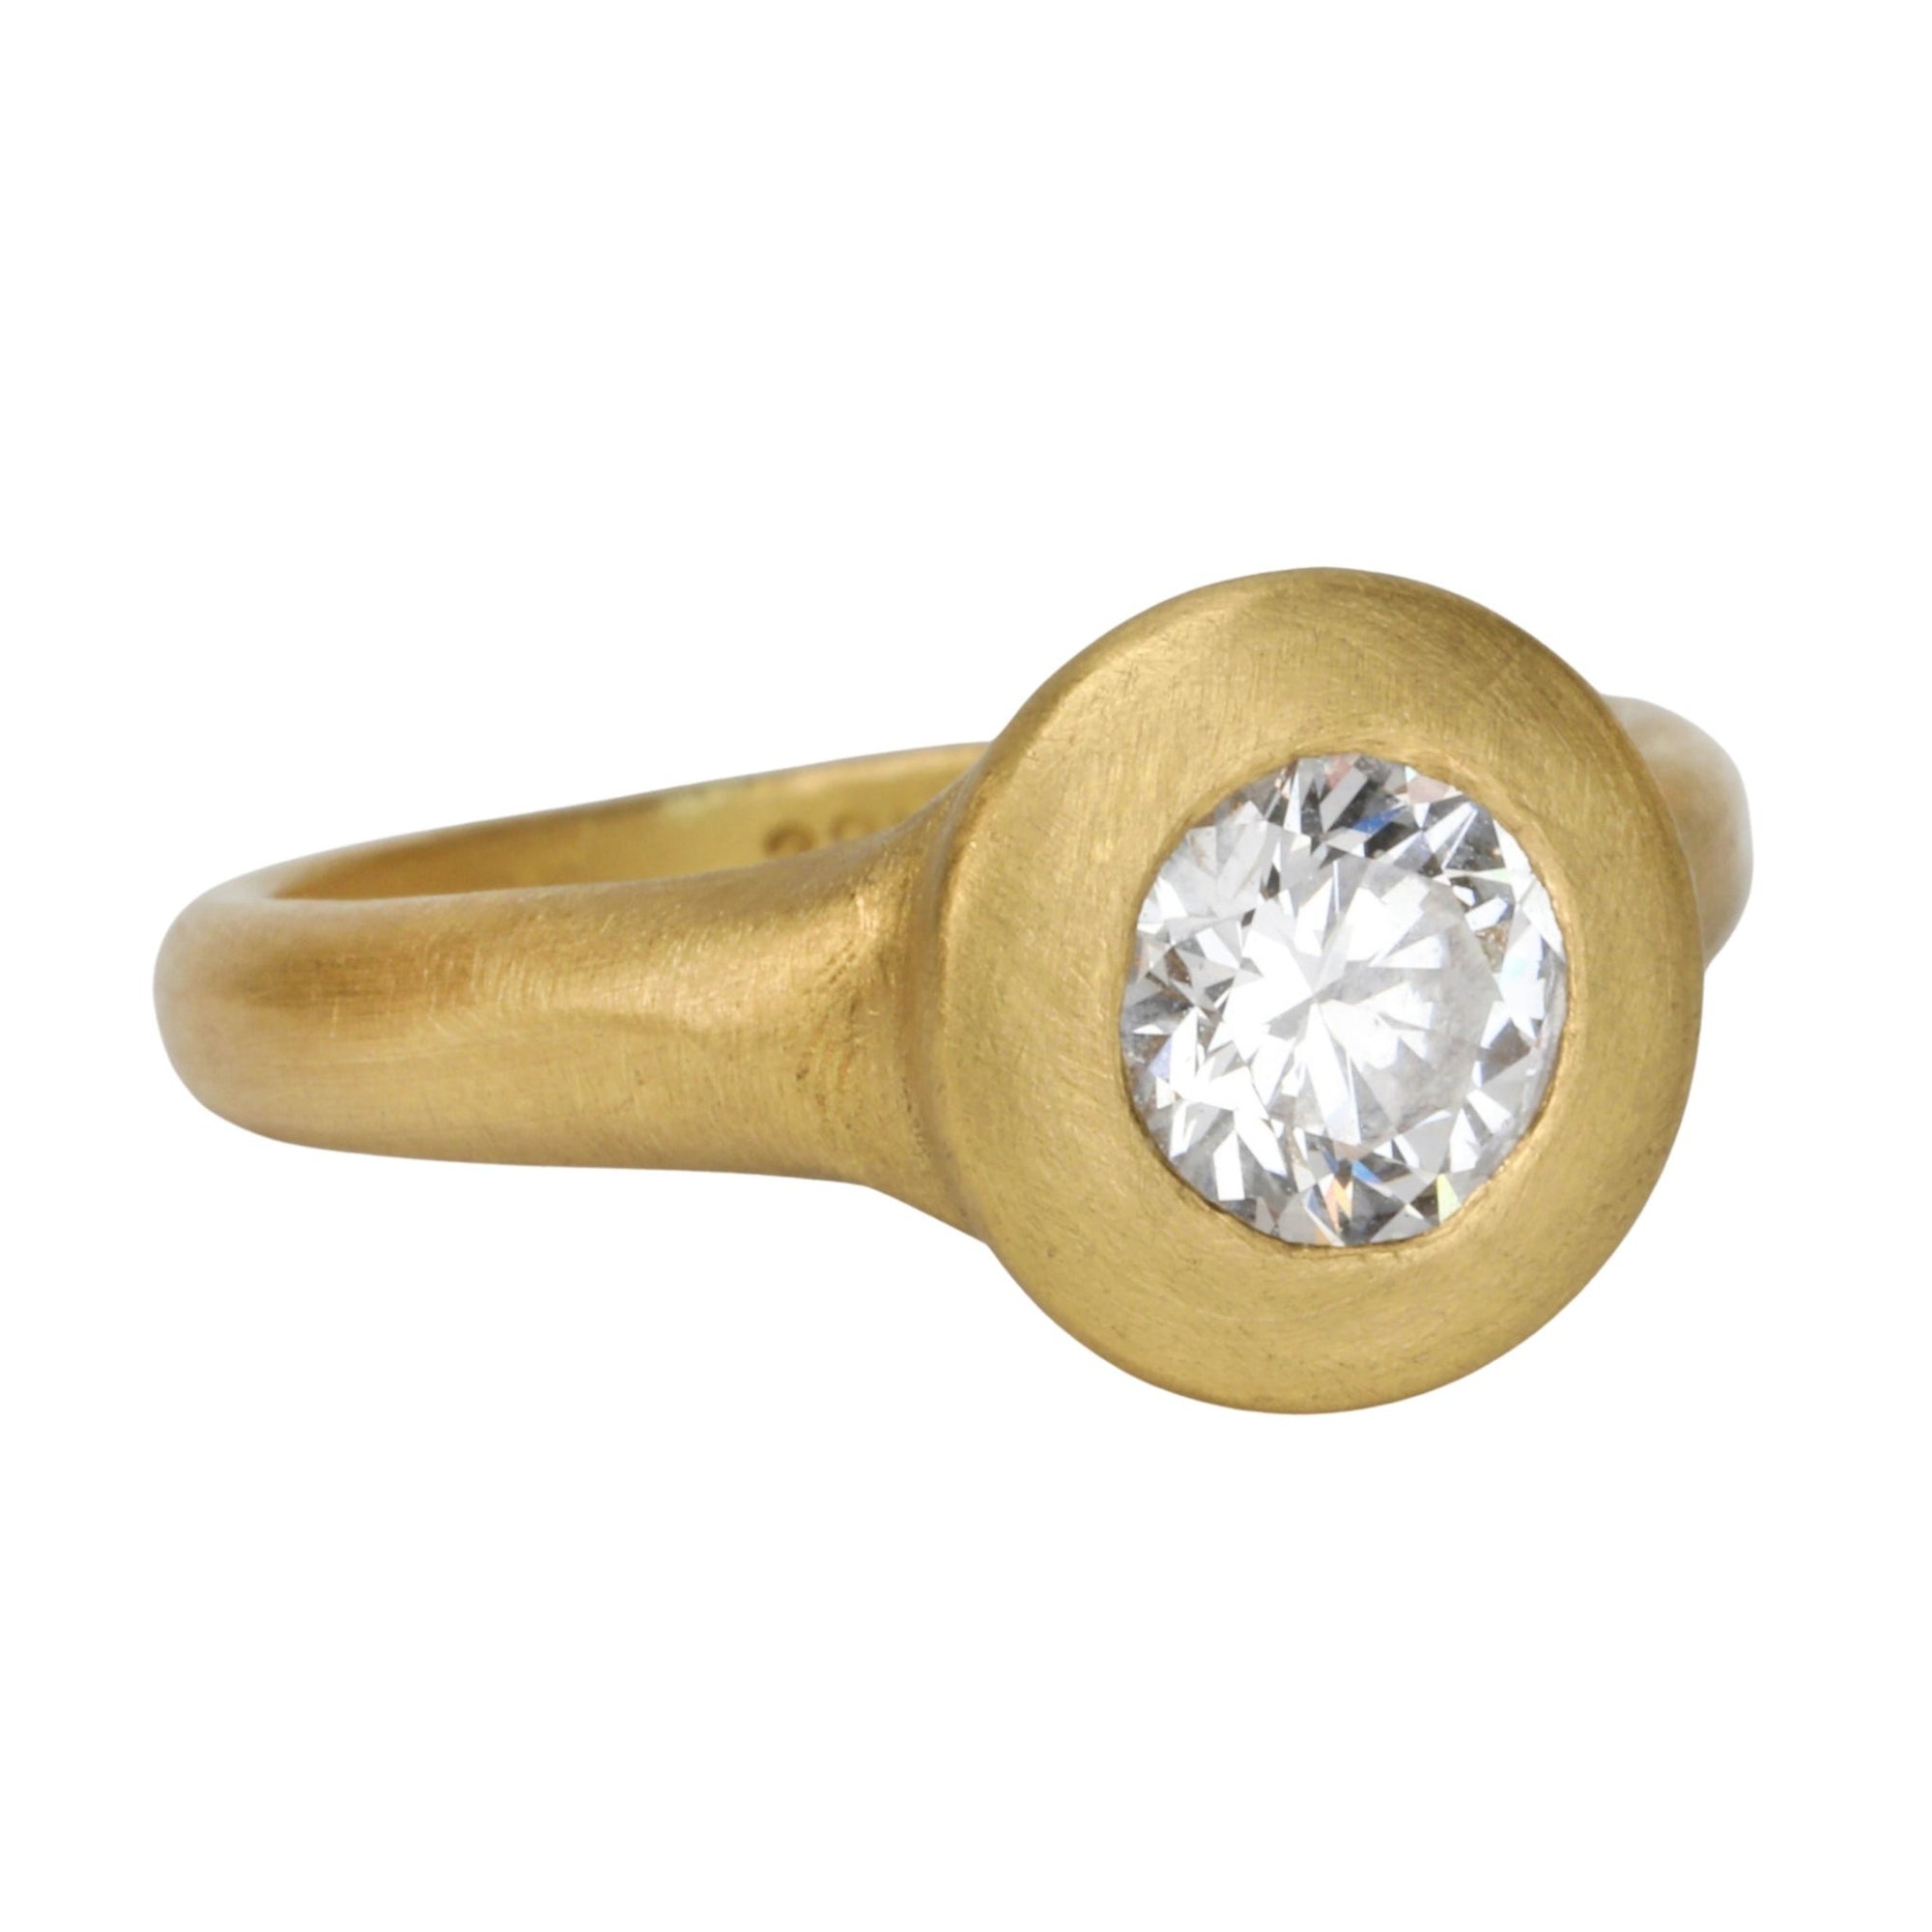 22K Gold "Greek-Inspired" Bezel-Set Diamond Ring - Peridot Fine Jewelry - Rosanne Pugliese